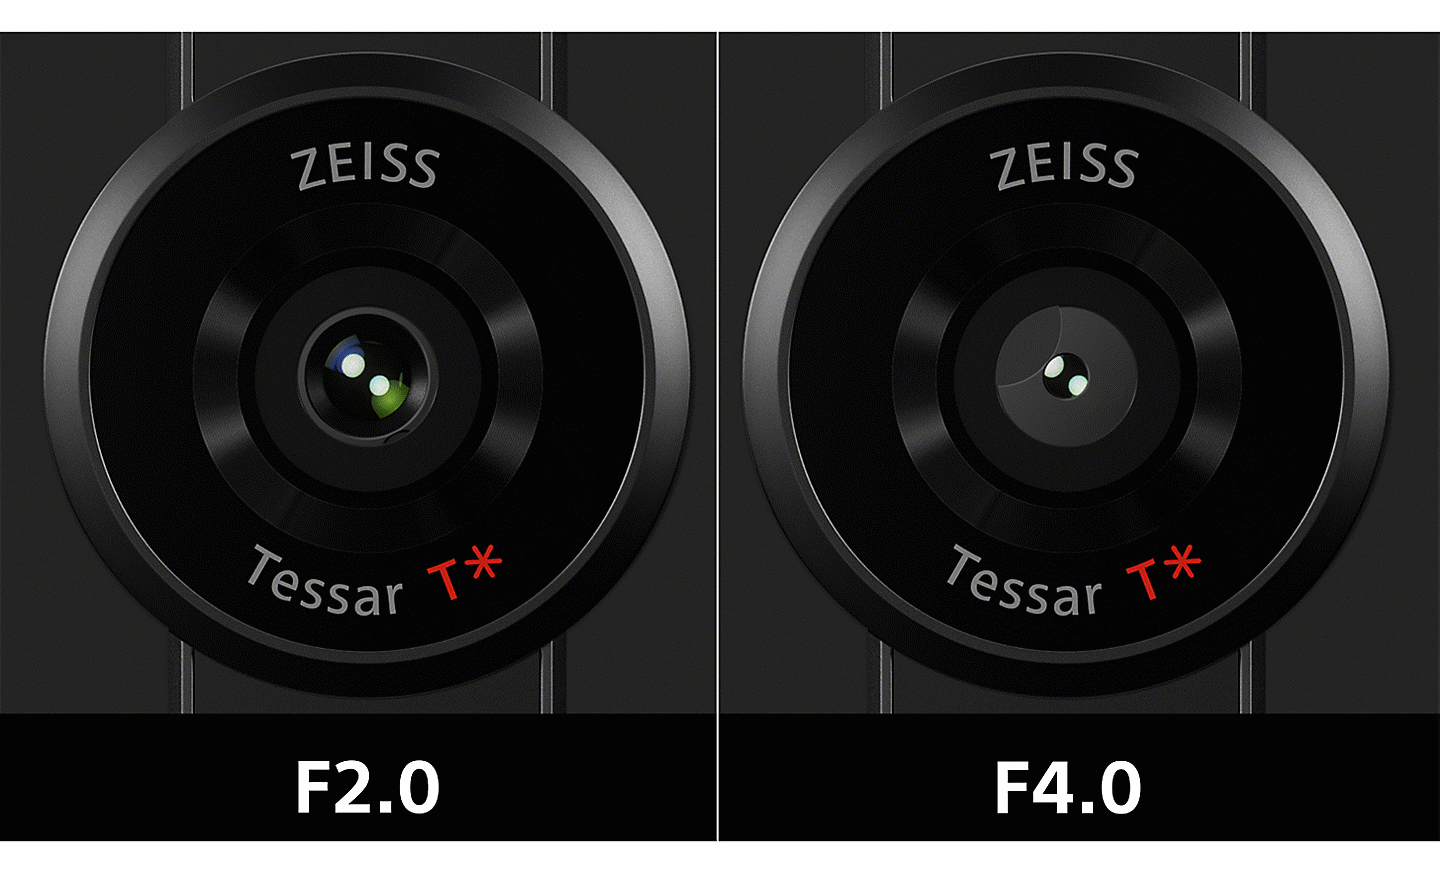 Hình ảnh kiểu chia đôi màn hình minh họa ống kính ZEISS Tessar T*, so sánh khẩu độ F2.0 với F4.0